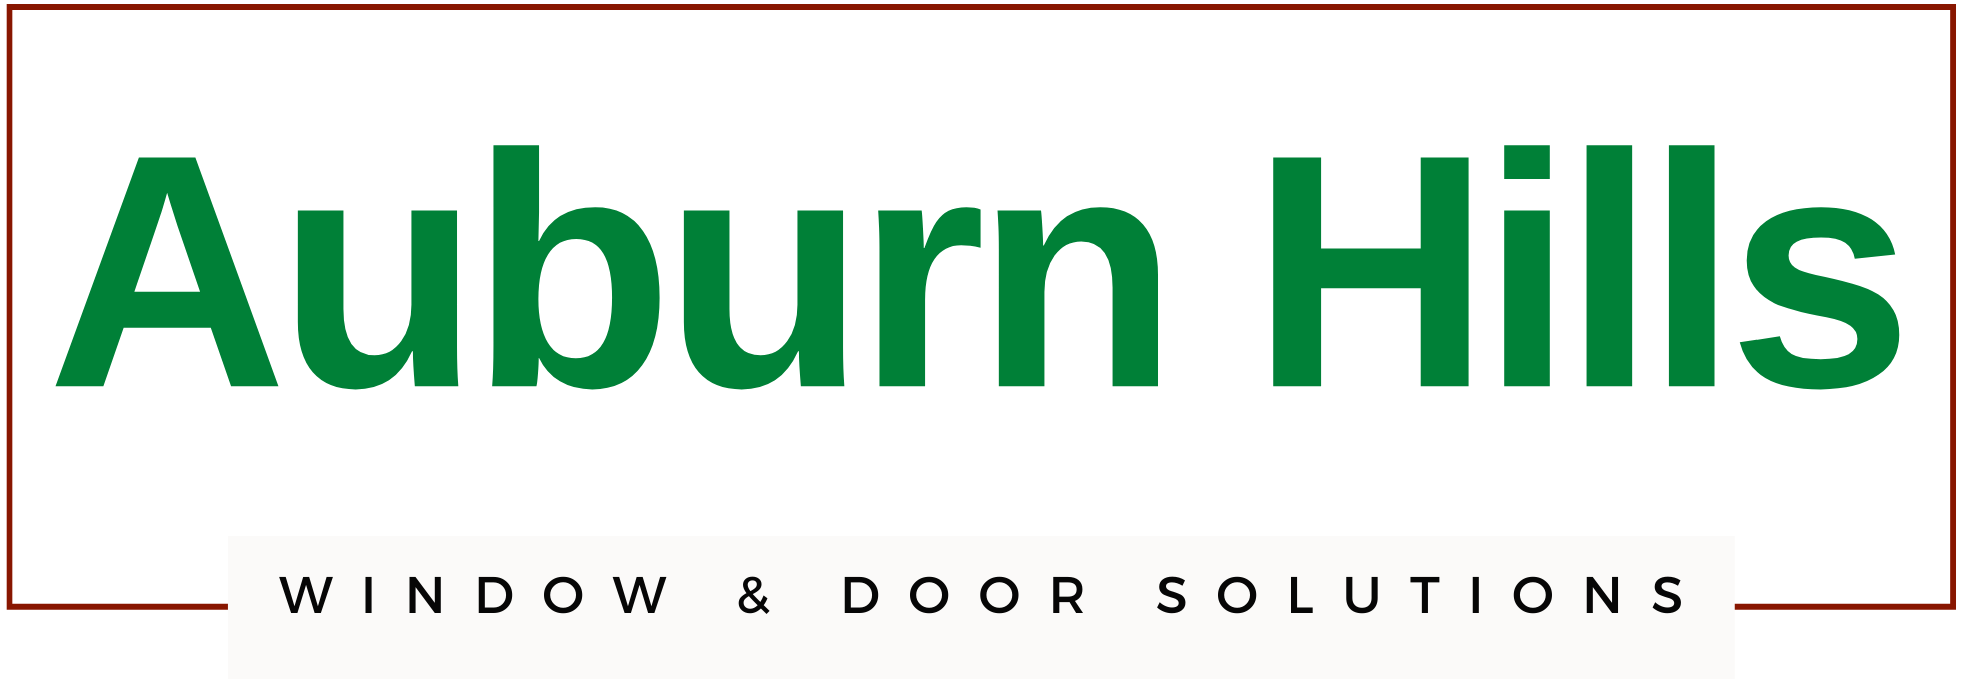 Auburn Hills Window Replacement & Doors